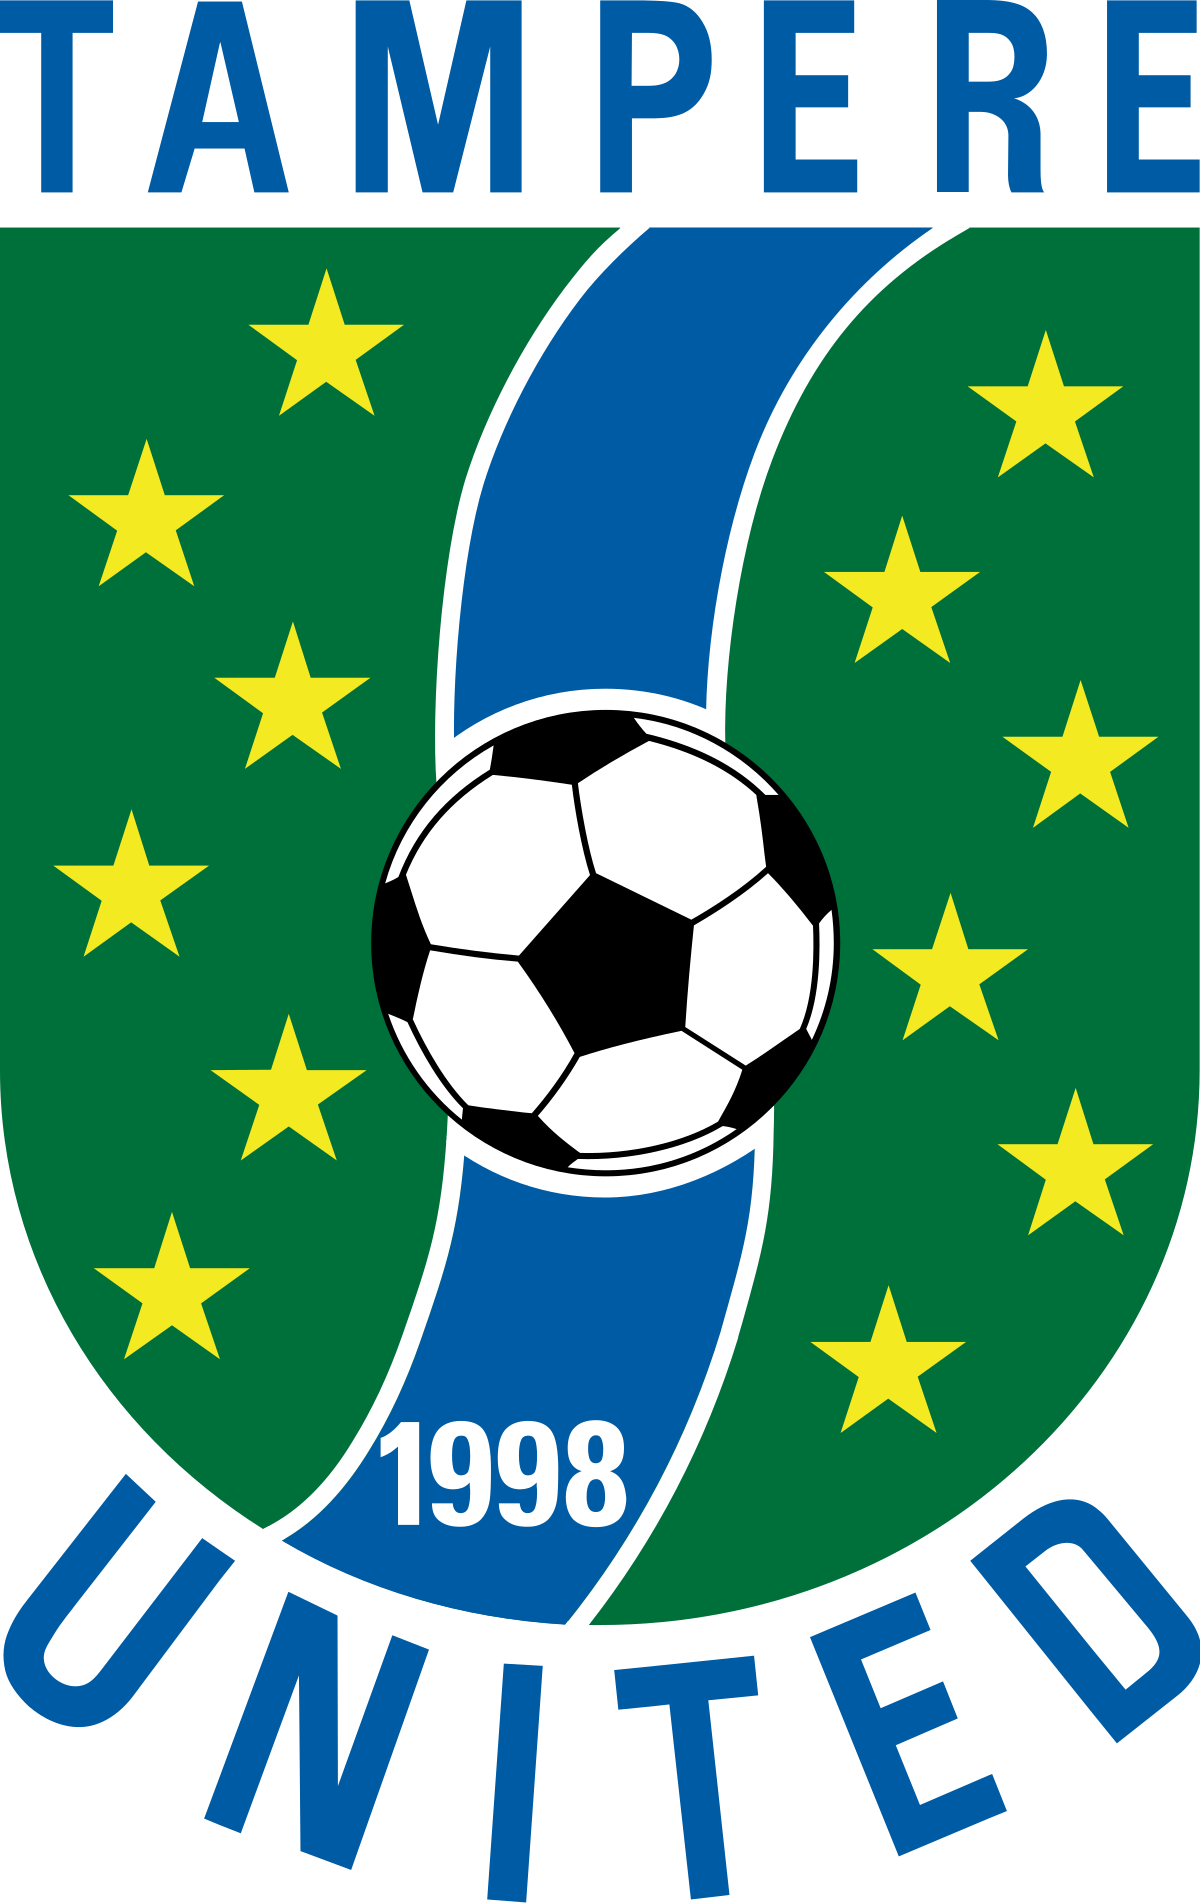 Tampere United-2 logo